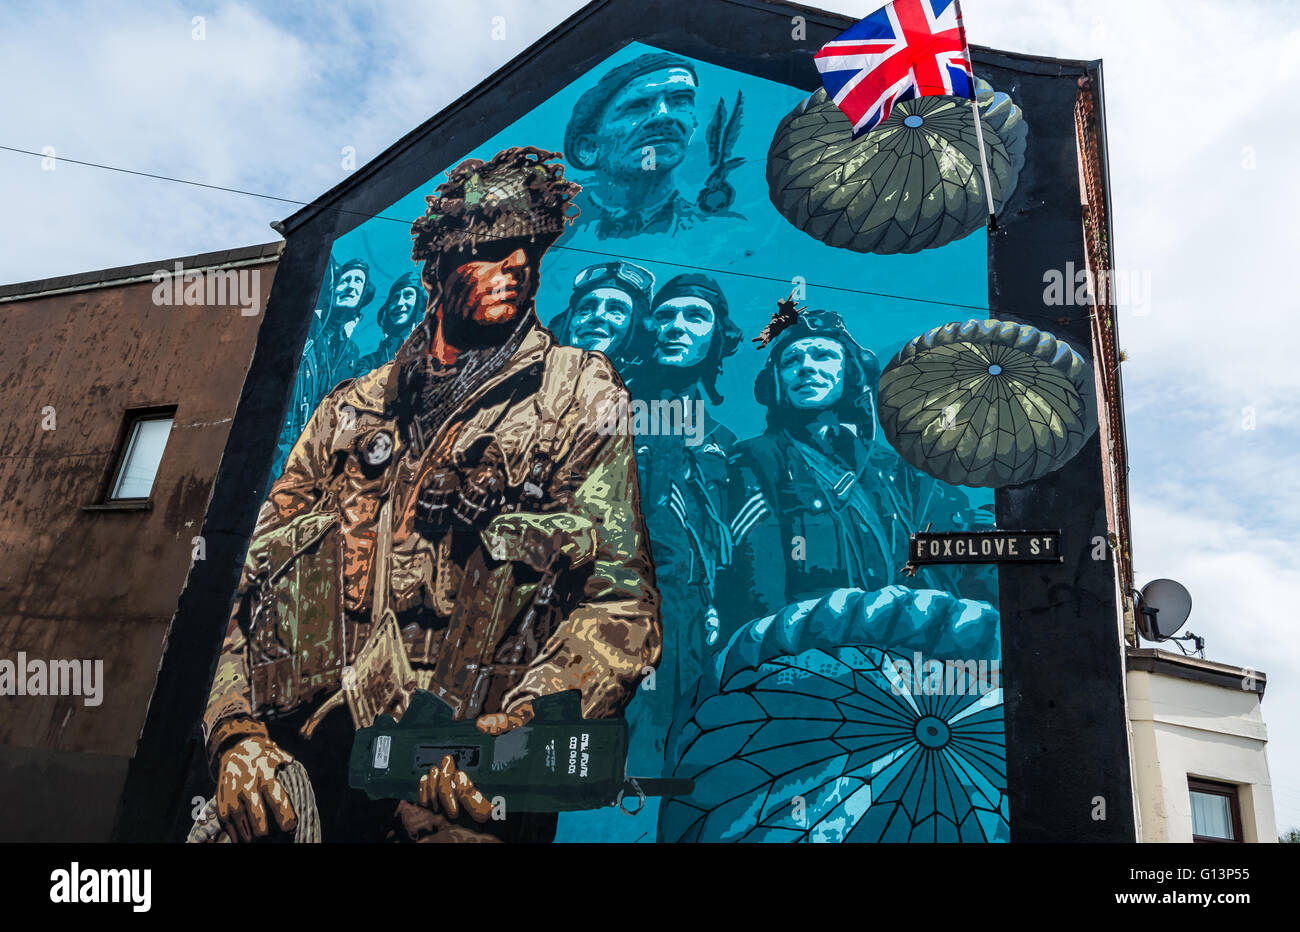 De nouvelles forces armées britanniques d'Irlande du Nord memorial peinture murale représentant un soldat et des pilotes de la RAF dans l'Est de Belfast Banque D'Images